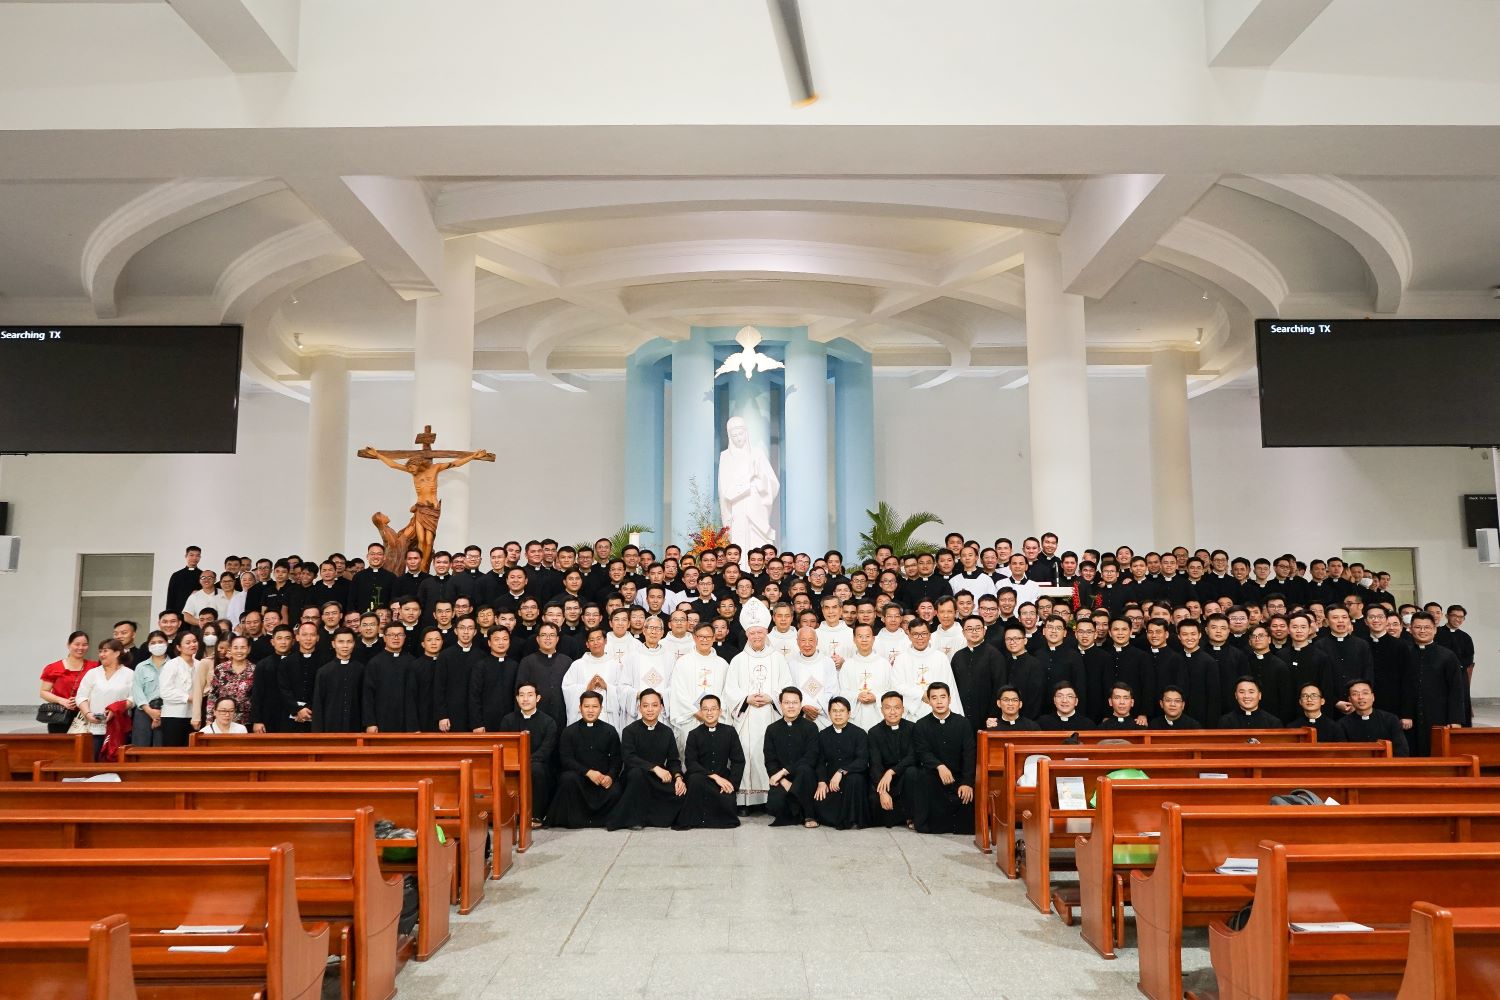 ĐCV Thánh Giuse Sài Gòn: Hành hương Đức Mẹ Núi Cúi và viếng ĐCV Thánh Giuse Xuân Lộc